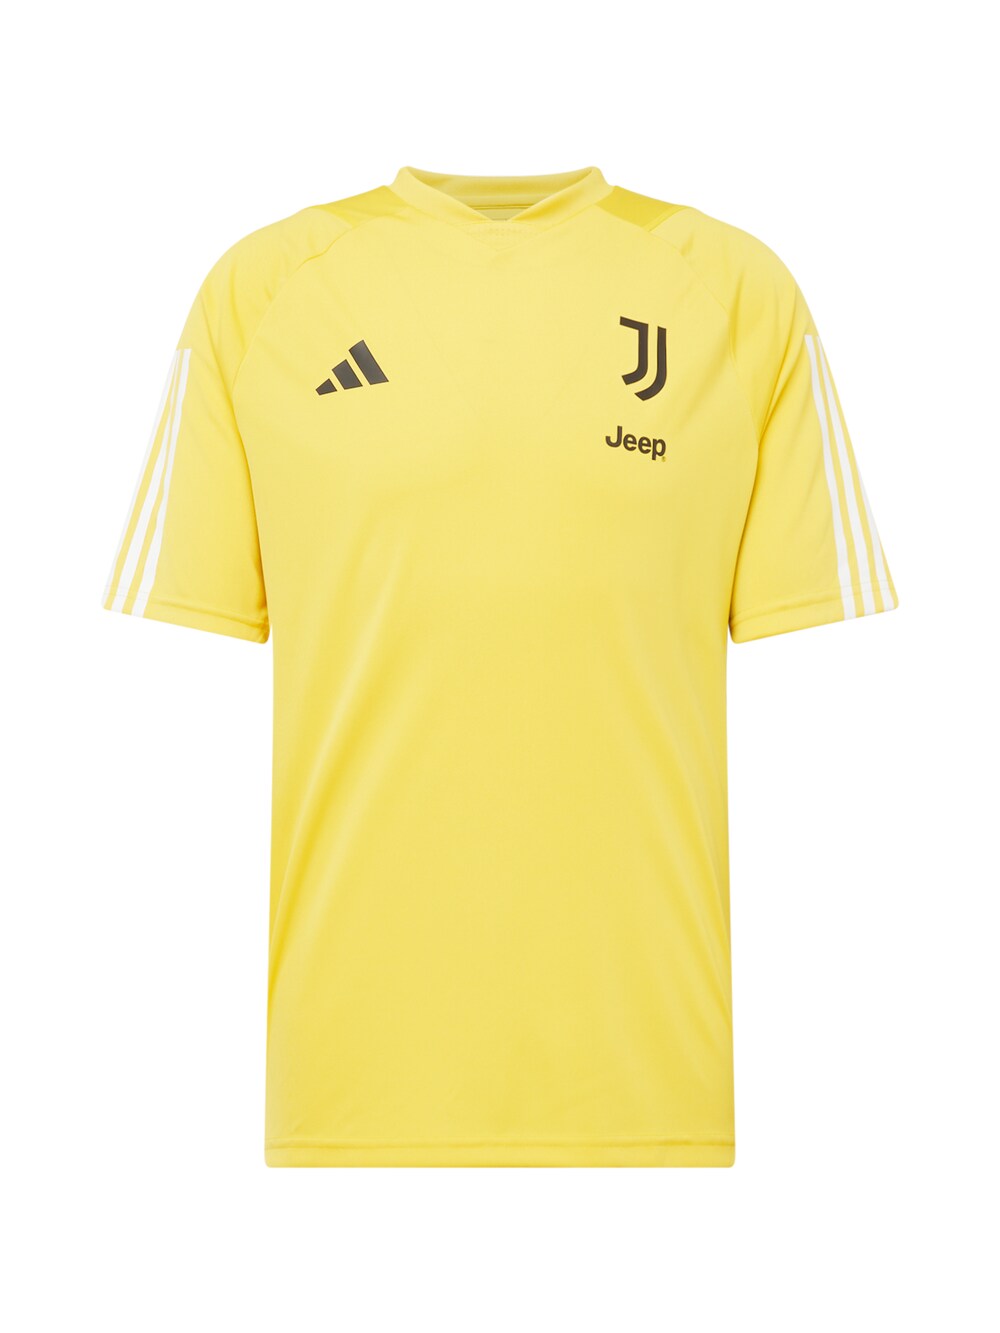 Джерси ADIDAS PERFORMANCE Juventus Turin Tiro 23, желтое золото